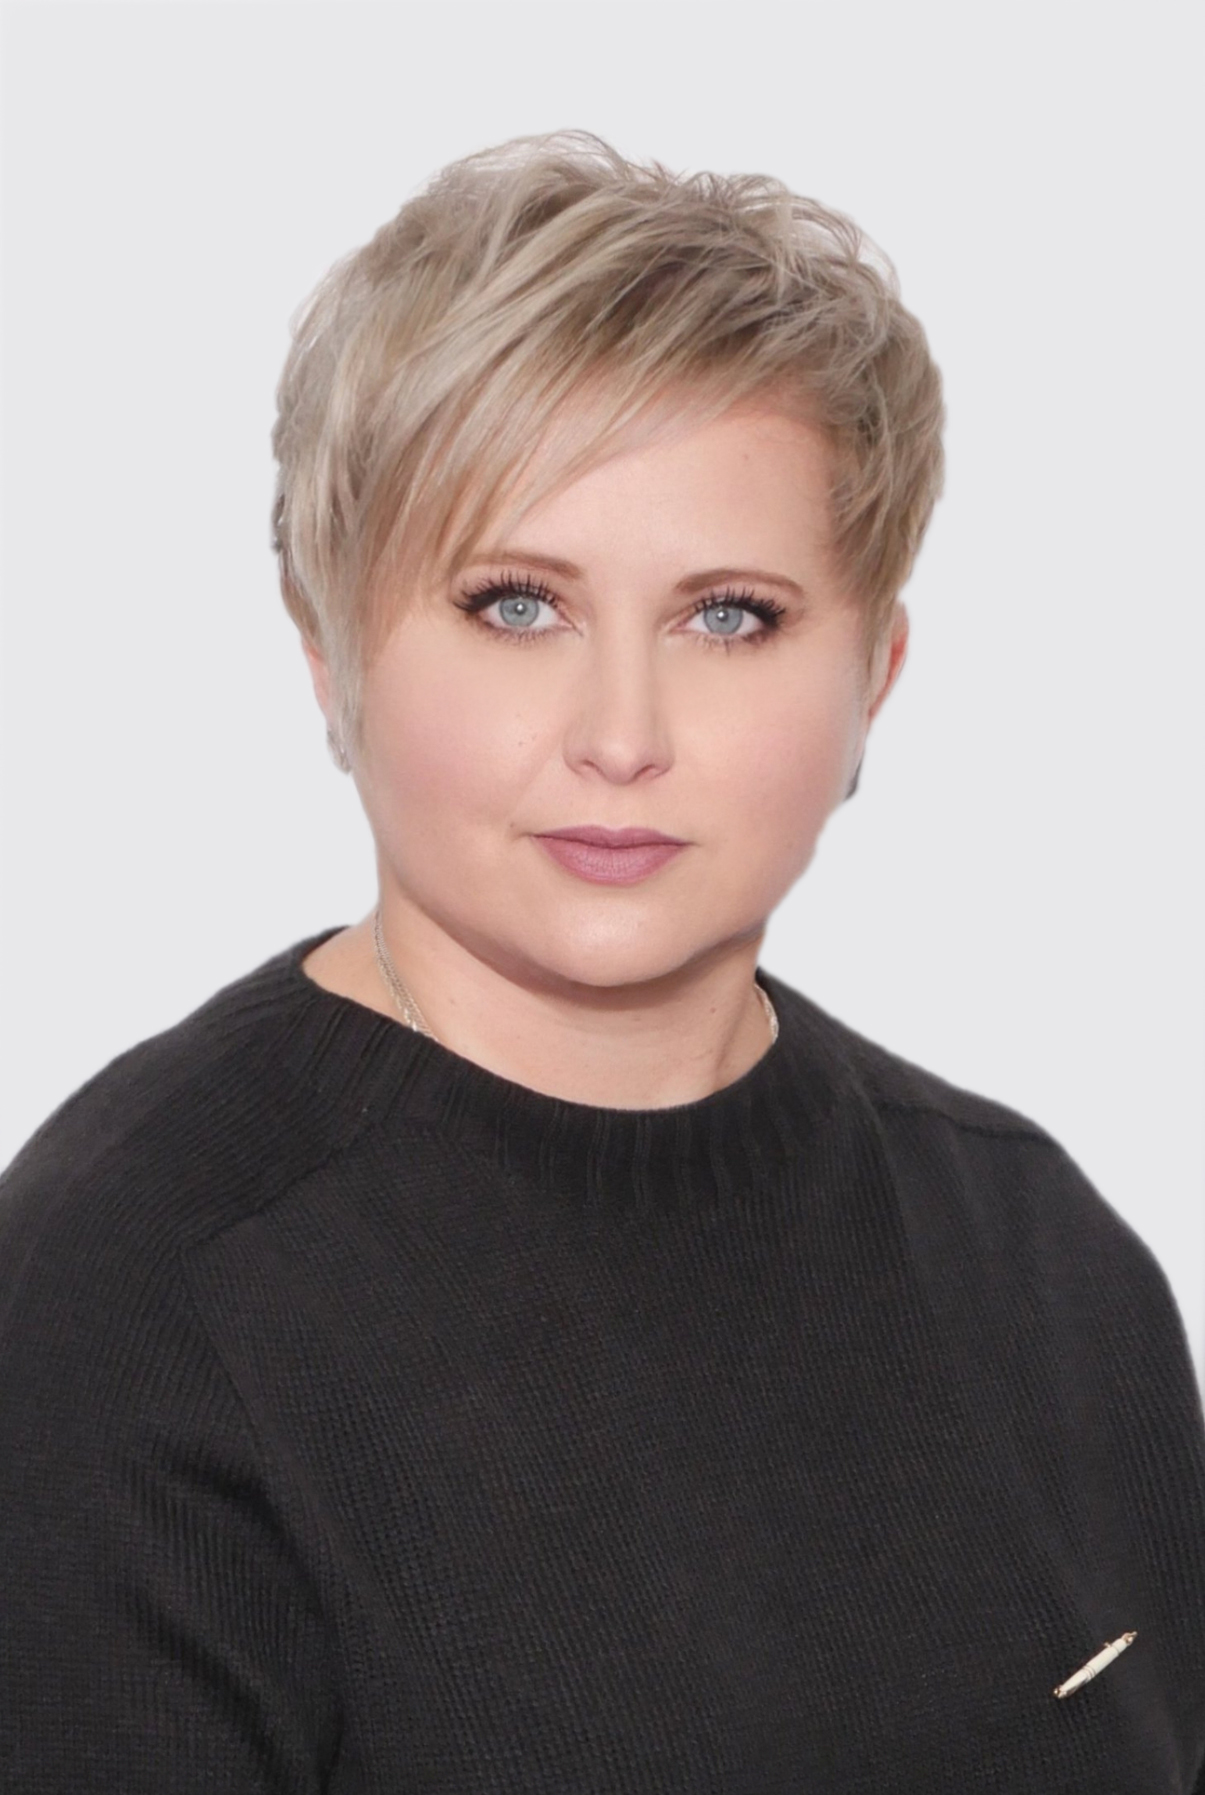 Шевко Ирина Яковлевна, учитель высшей квалификационной категории